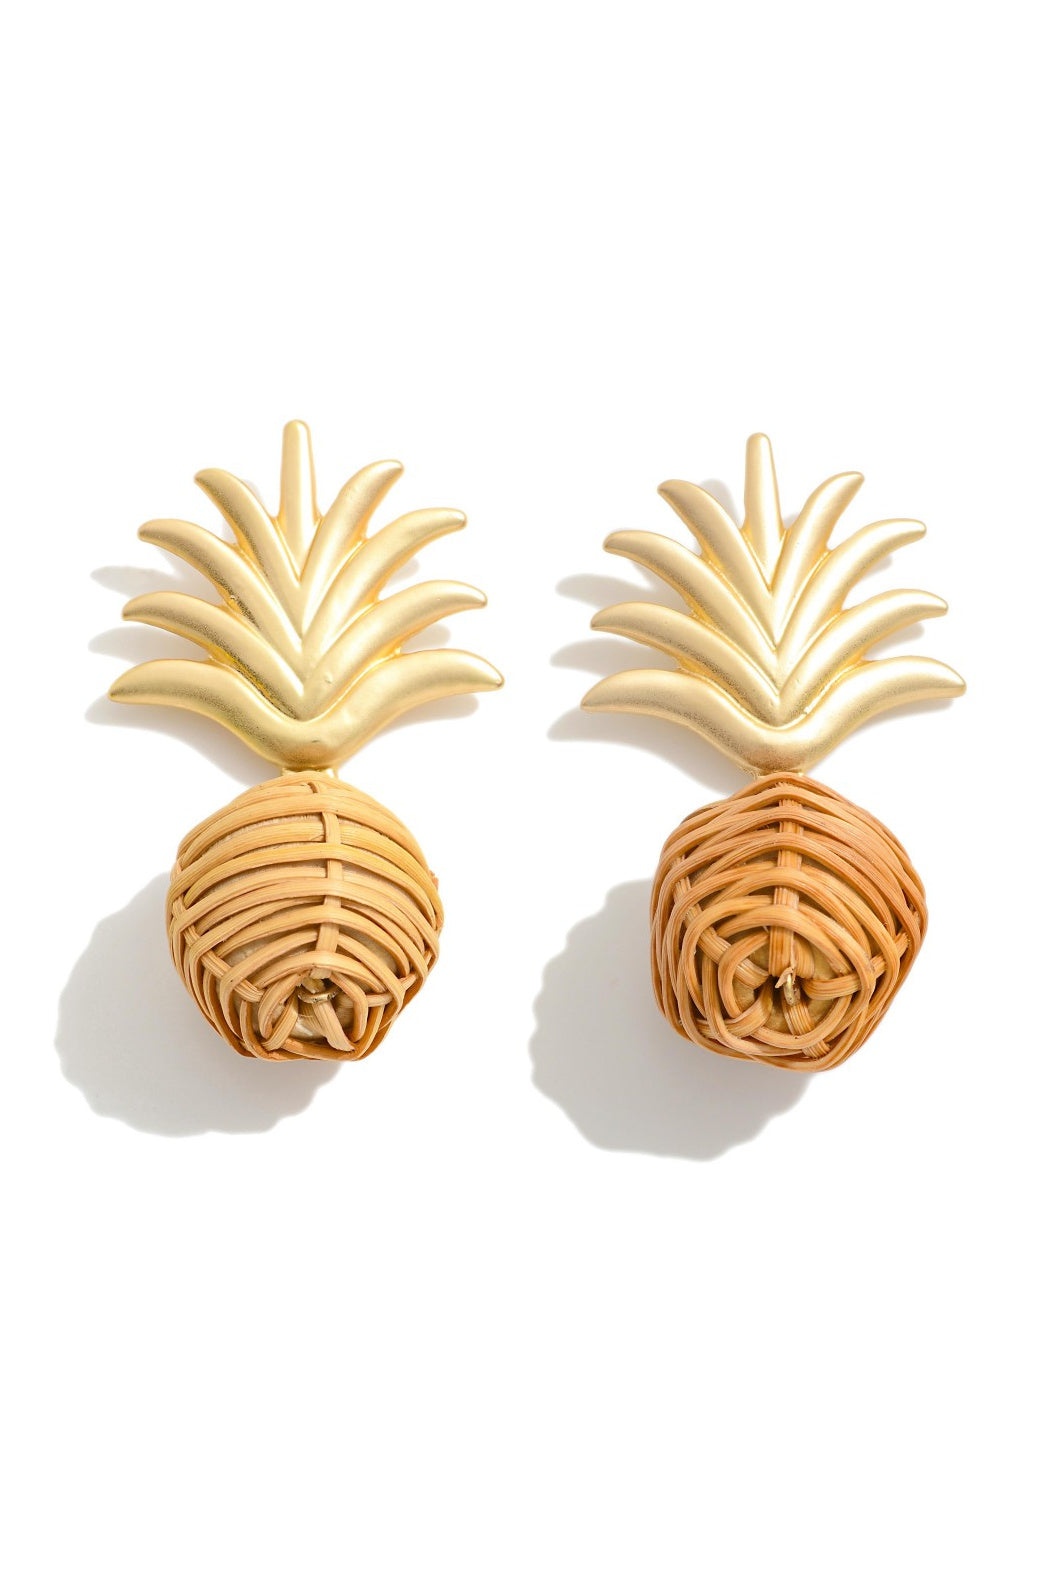 Raffia Pineapple Earrings